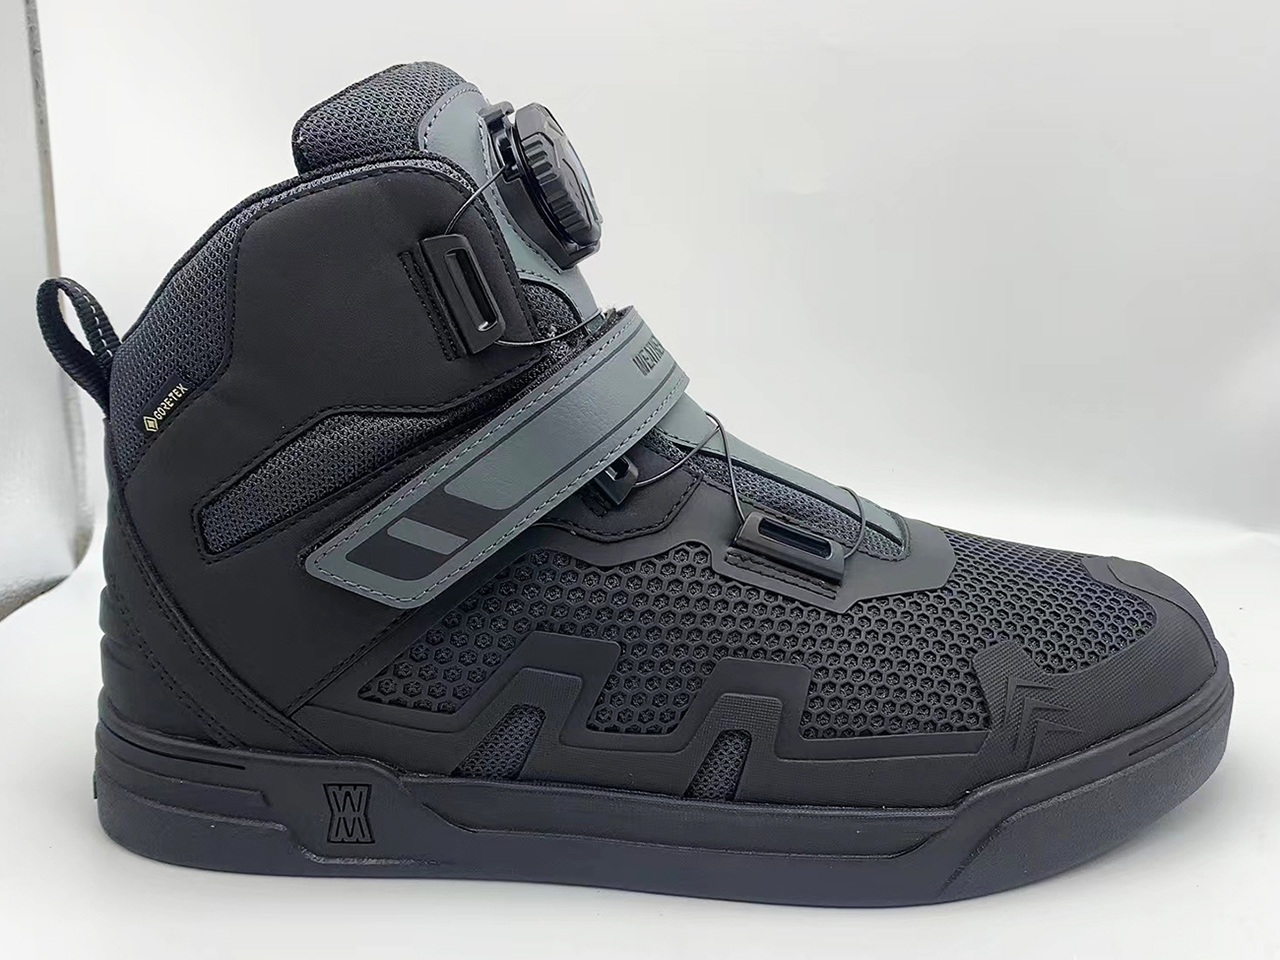 Mountaineering waterproof outdoor shoes